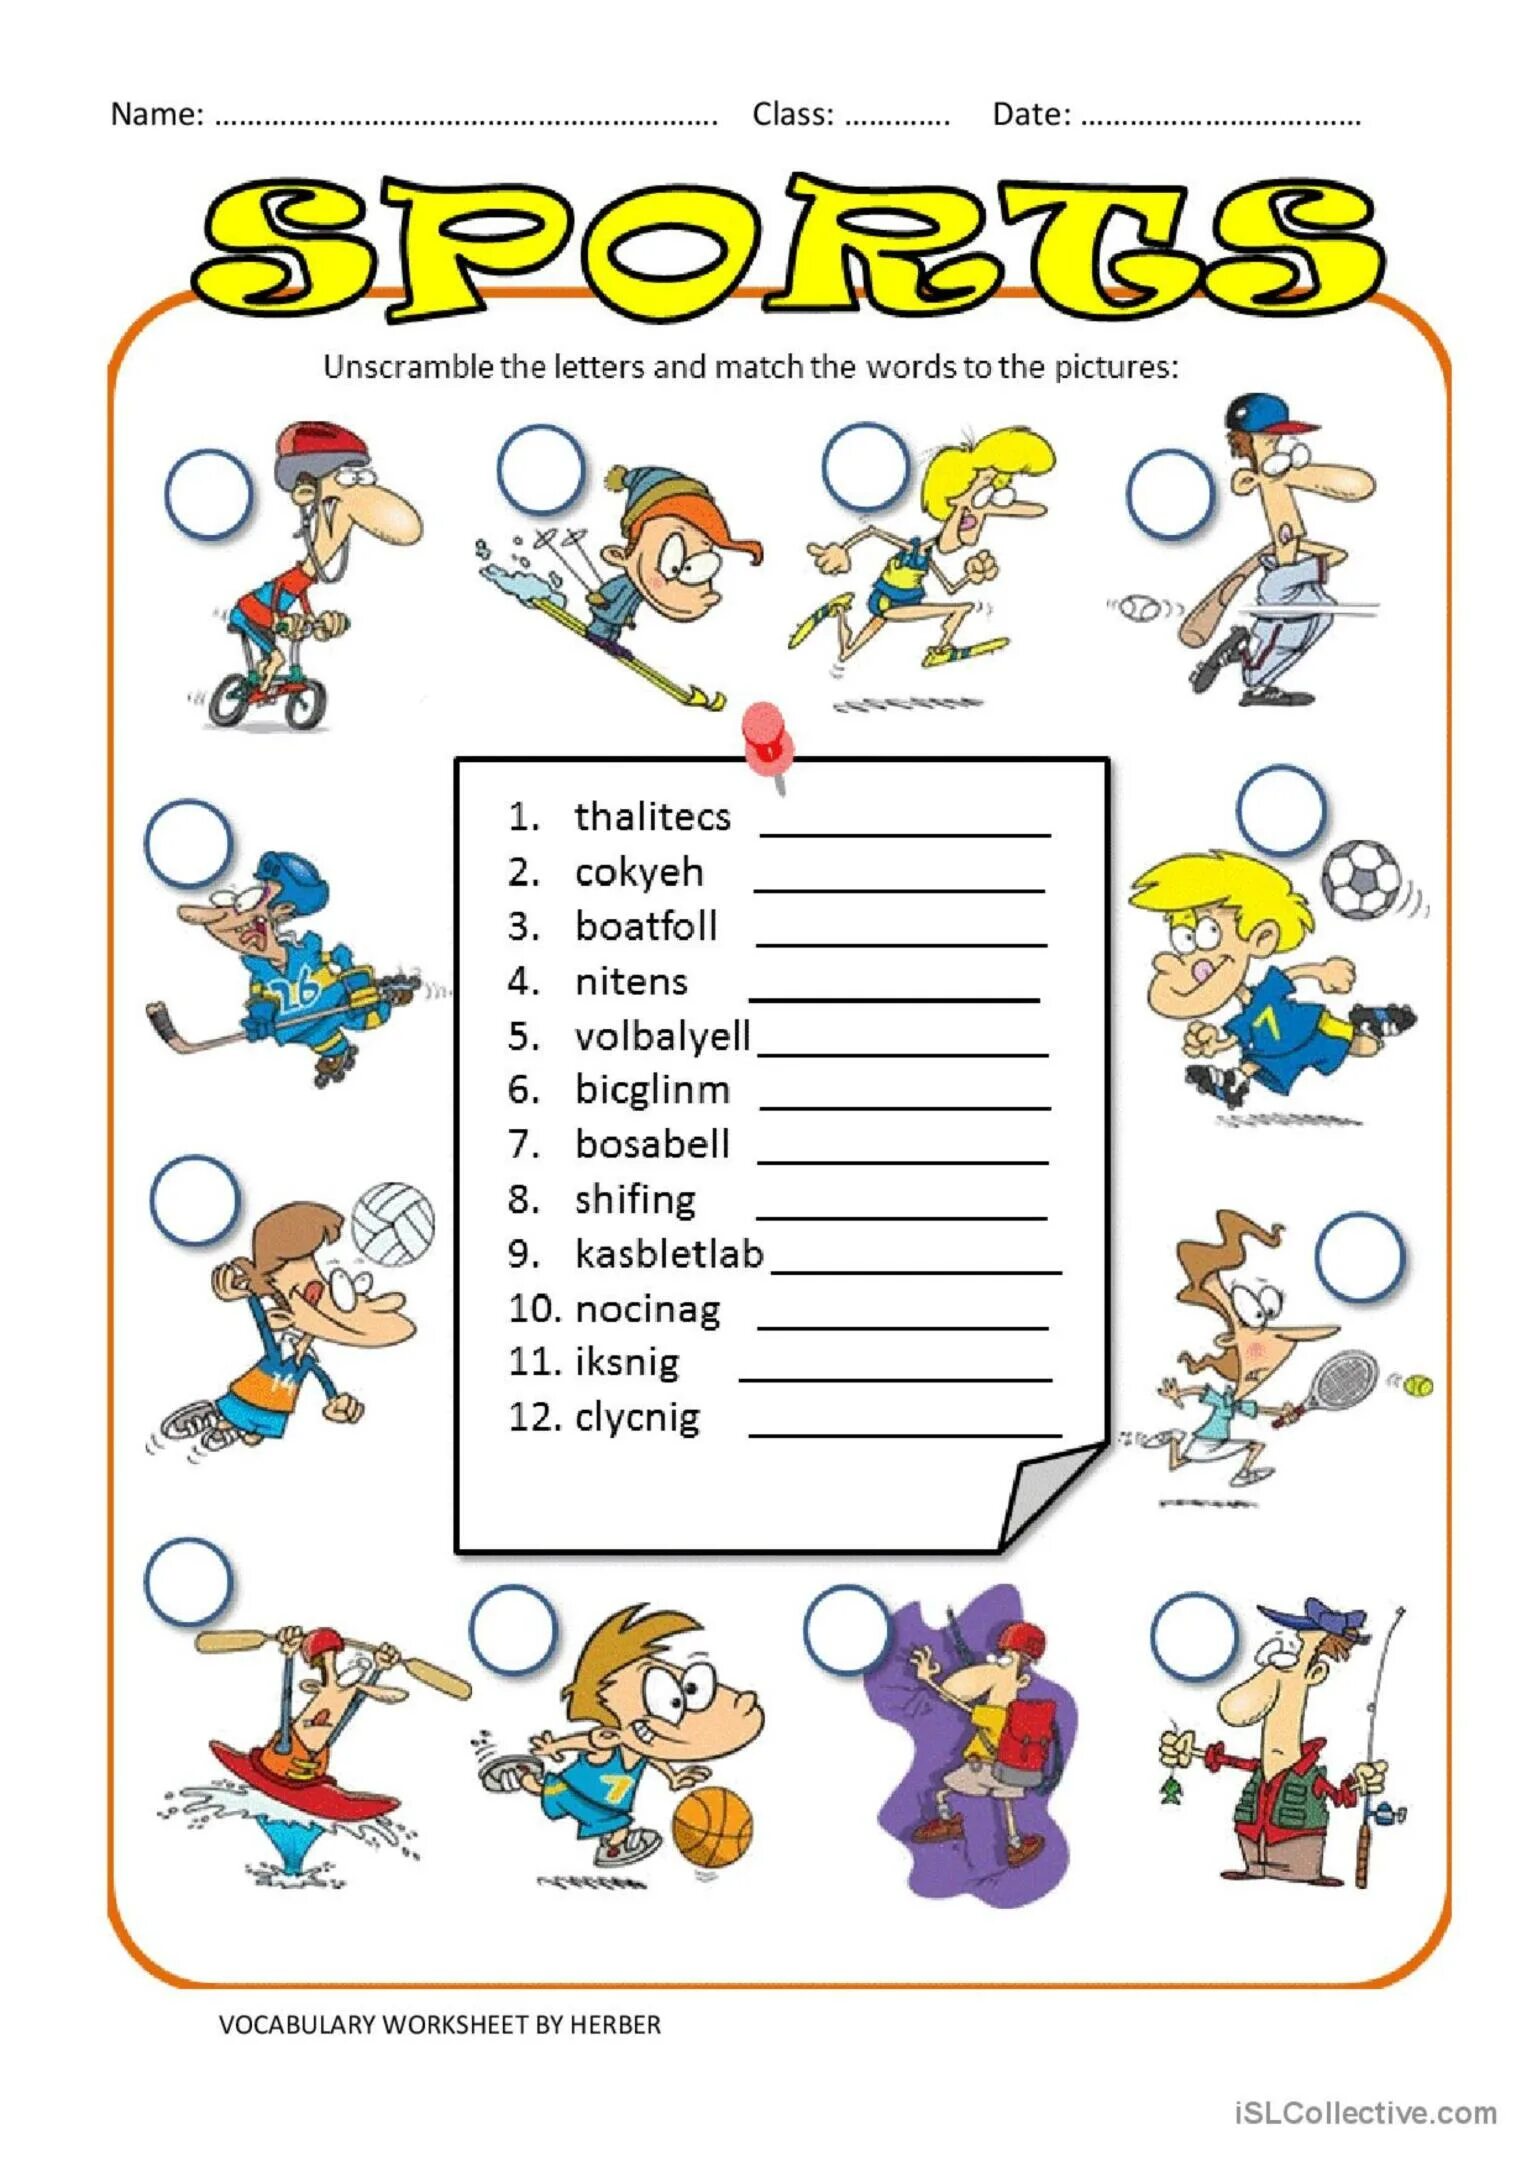 Sports exercises. Спорт Worksheet. Задания по теме спорт на английском языке. Спорт английский Worksheets. Задания для детей про спорт на англ.